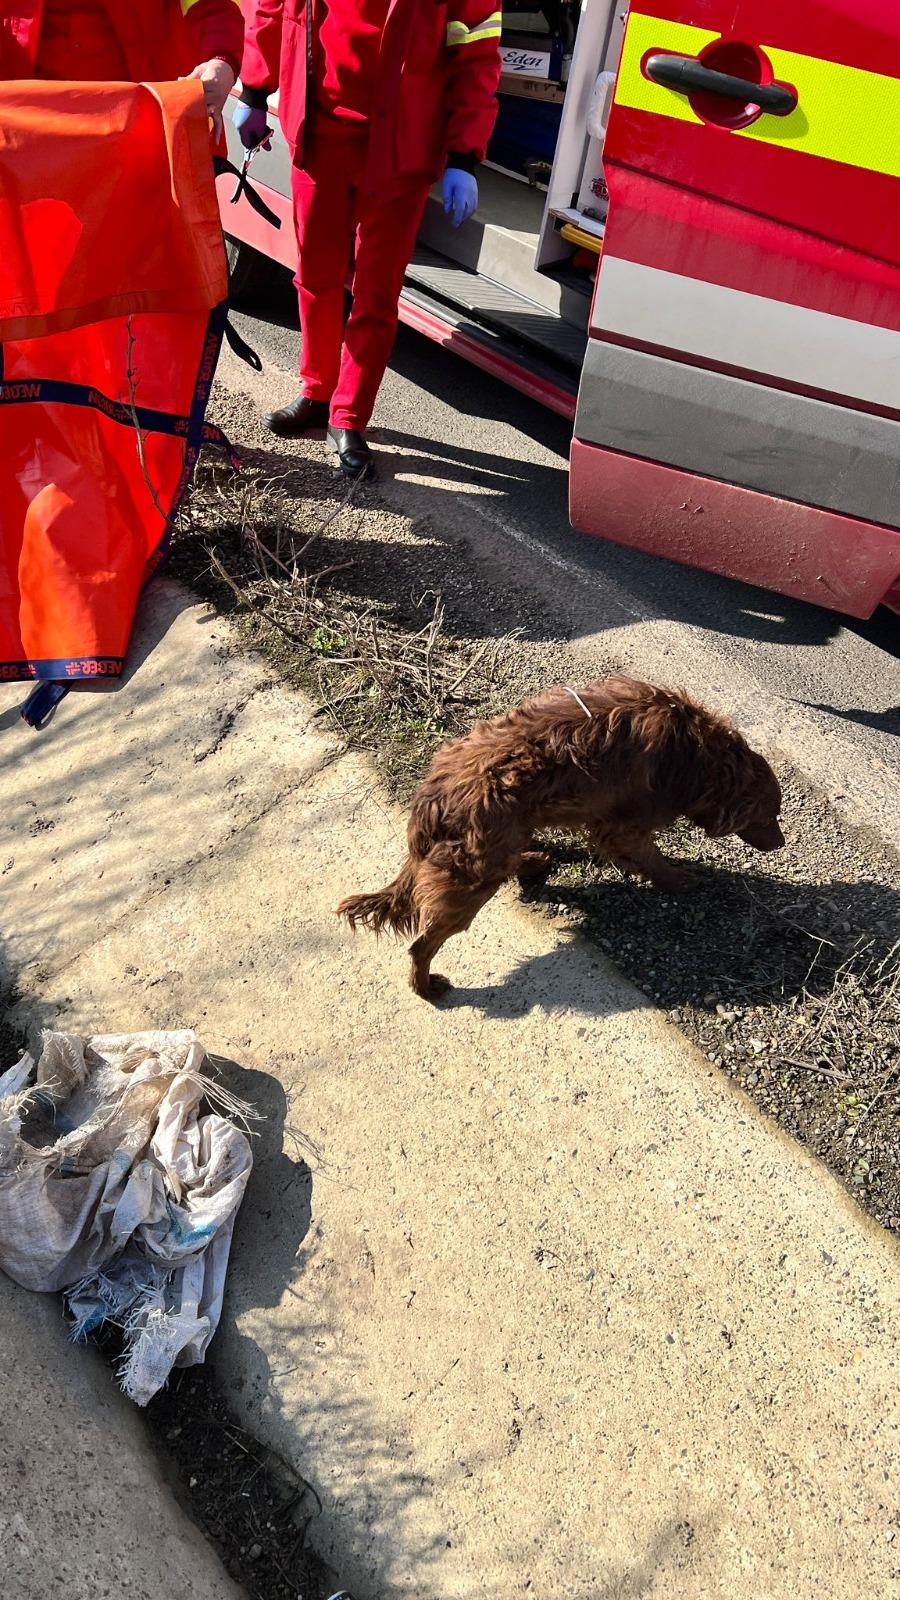 Un echipaj SMURD care se întorcea din misiune a salvat un căţel abandonat pe marginea drumului, în Botoşani. Animalul era aruncat într-un sac legat